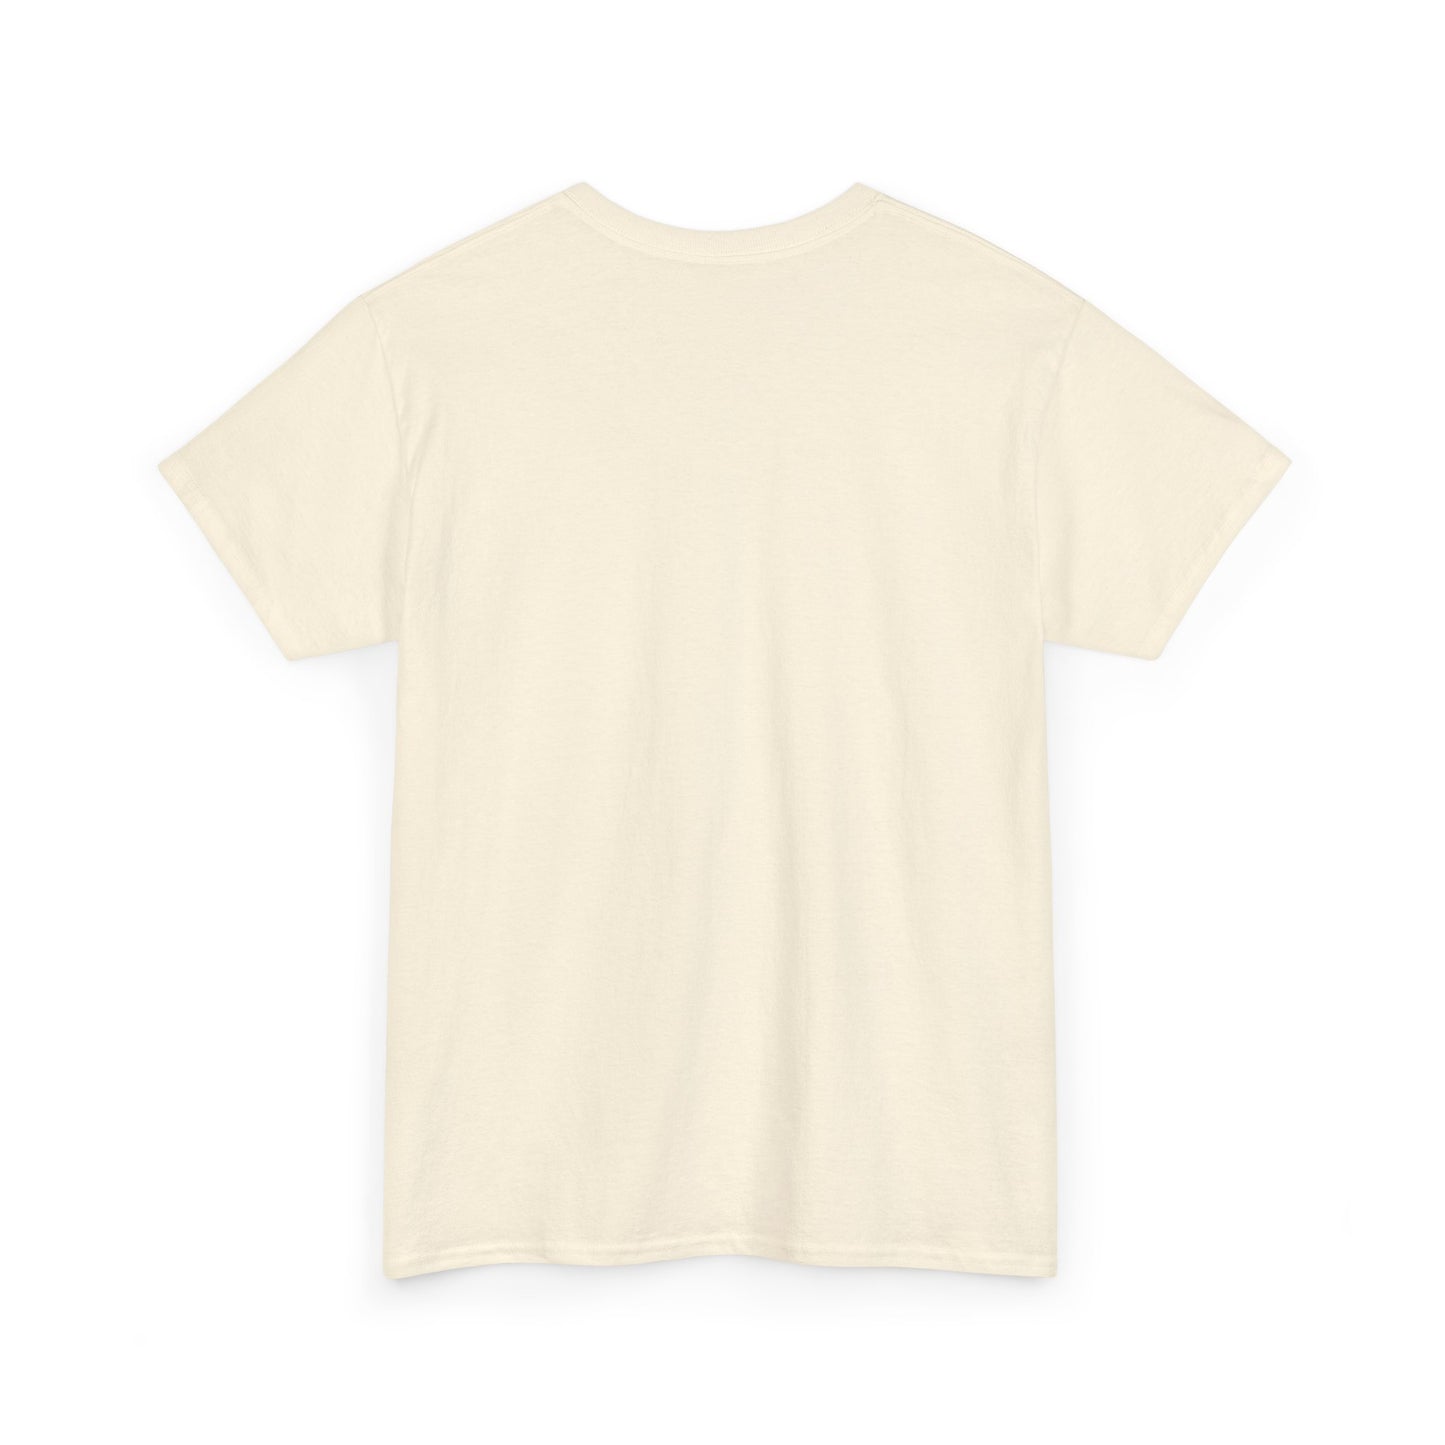 Unisex Heavy Cotton Graphic design (Woman) T-shirt